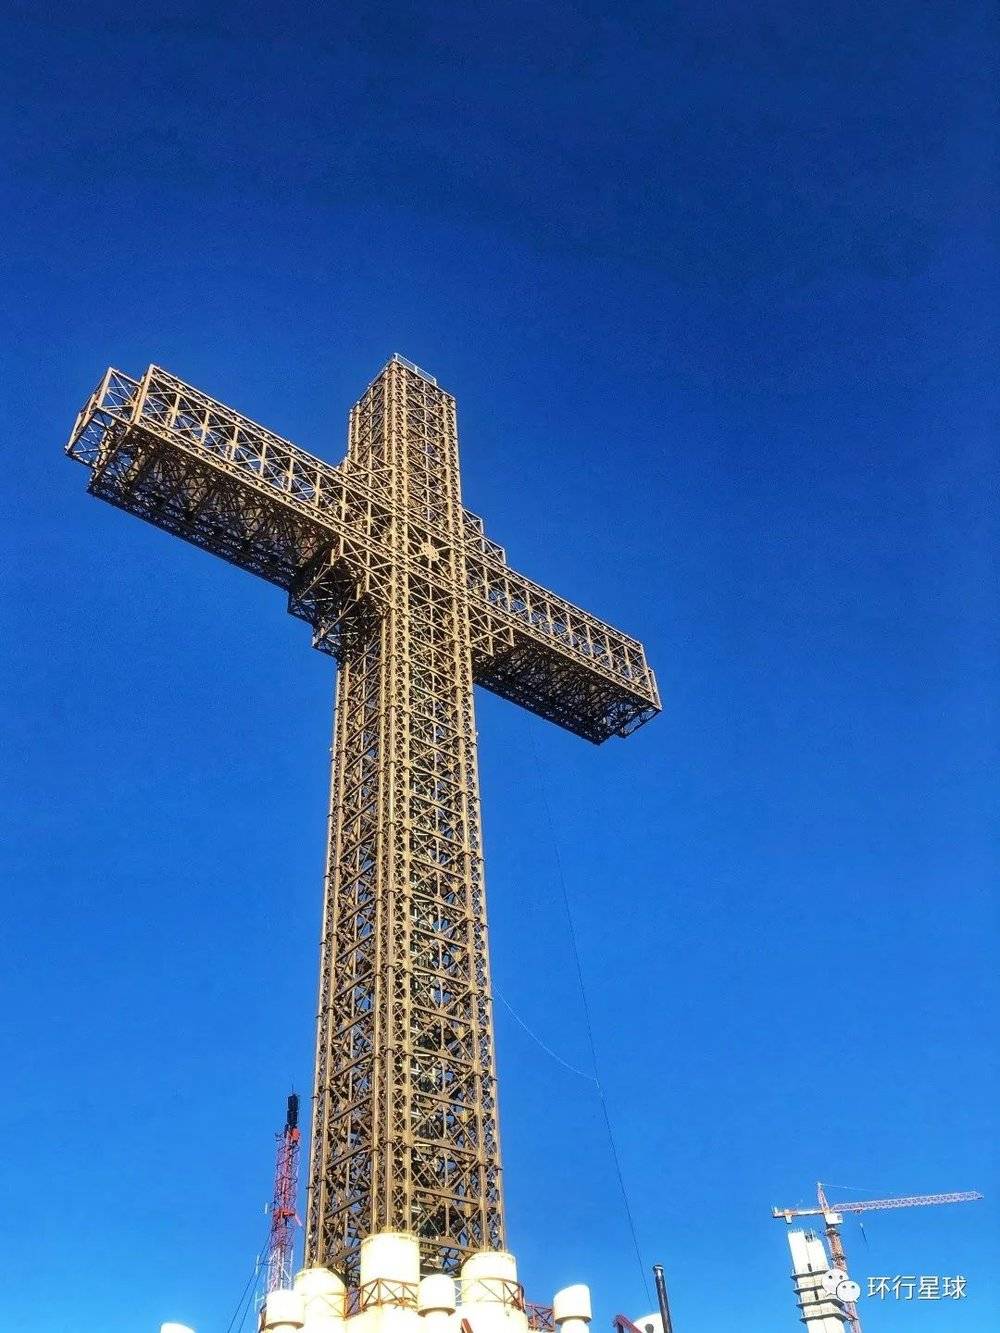 斯科普里兴建的金属十字架，全市最高点，作为新兴旅游项目而闻名